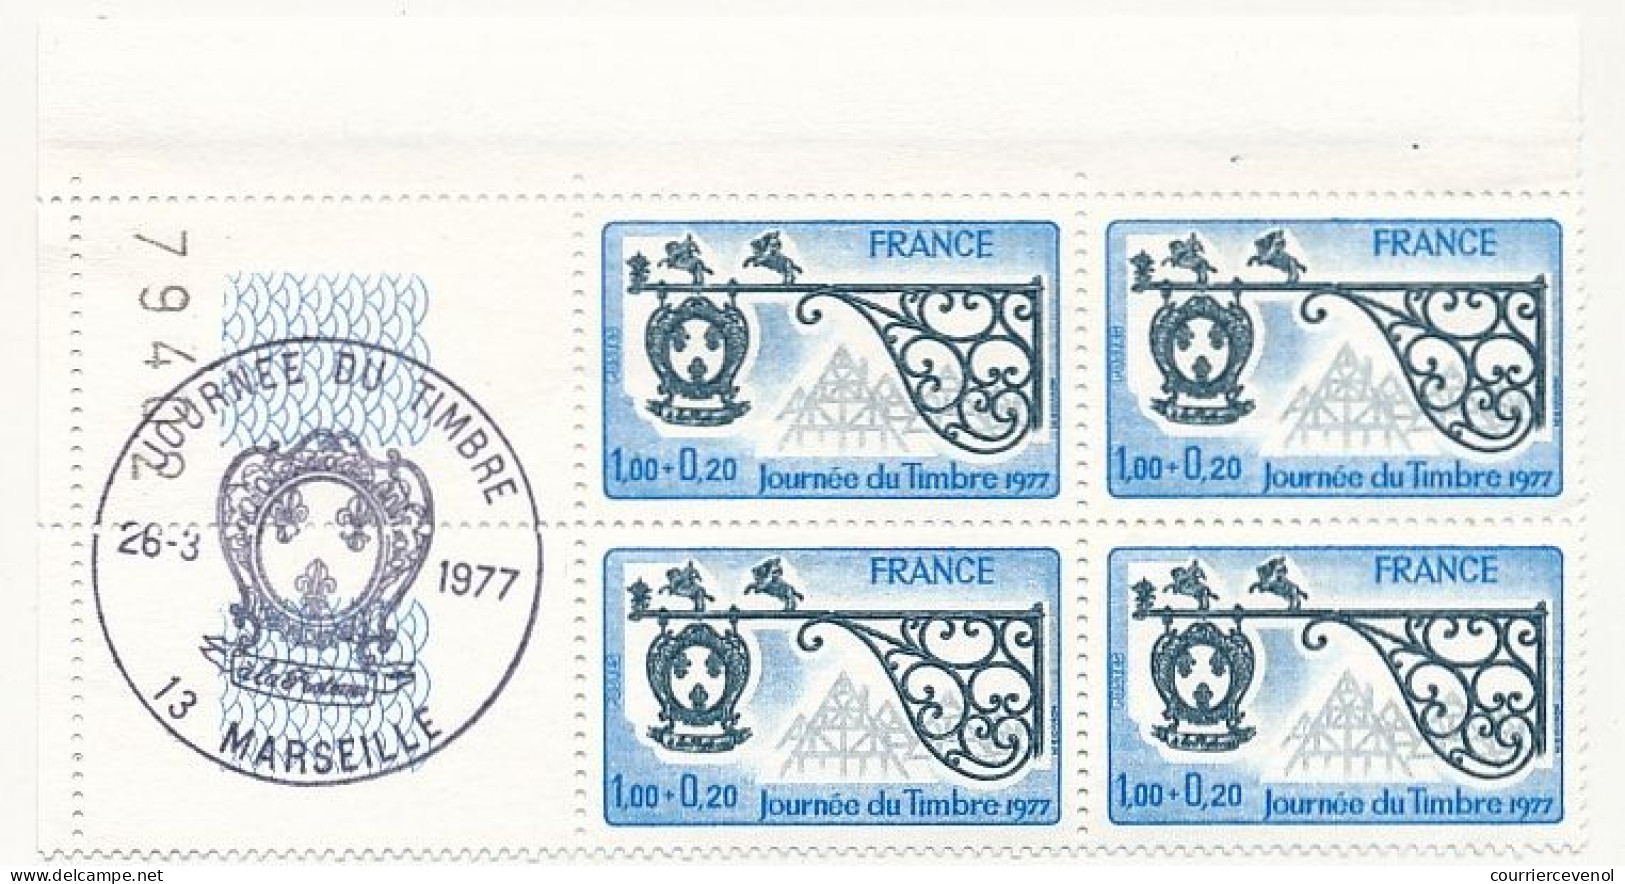 FRANCE - 19 Blocs de quatre avec oblitérations Journée du timbre sur les bords -1965 à 1984 - Paris et Marseille